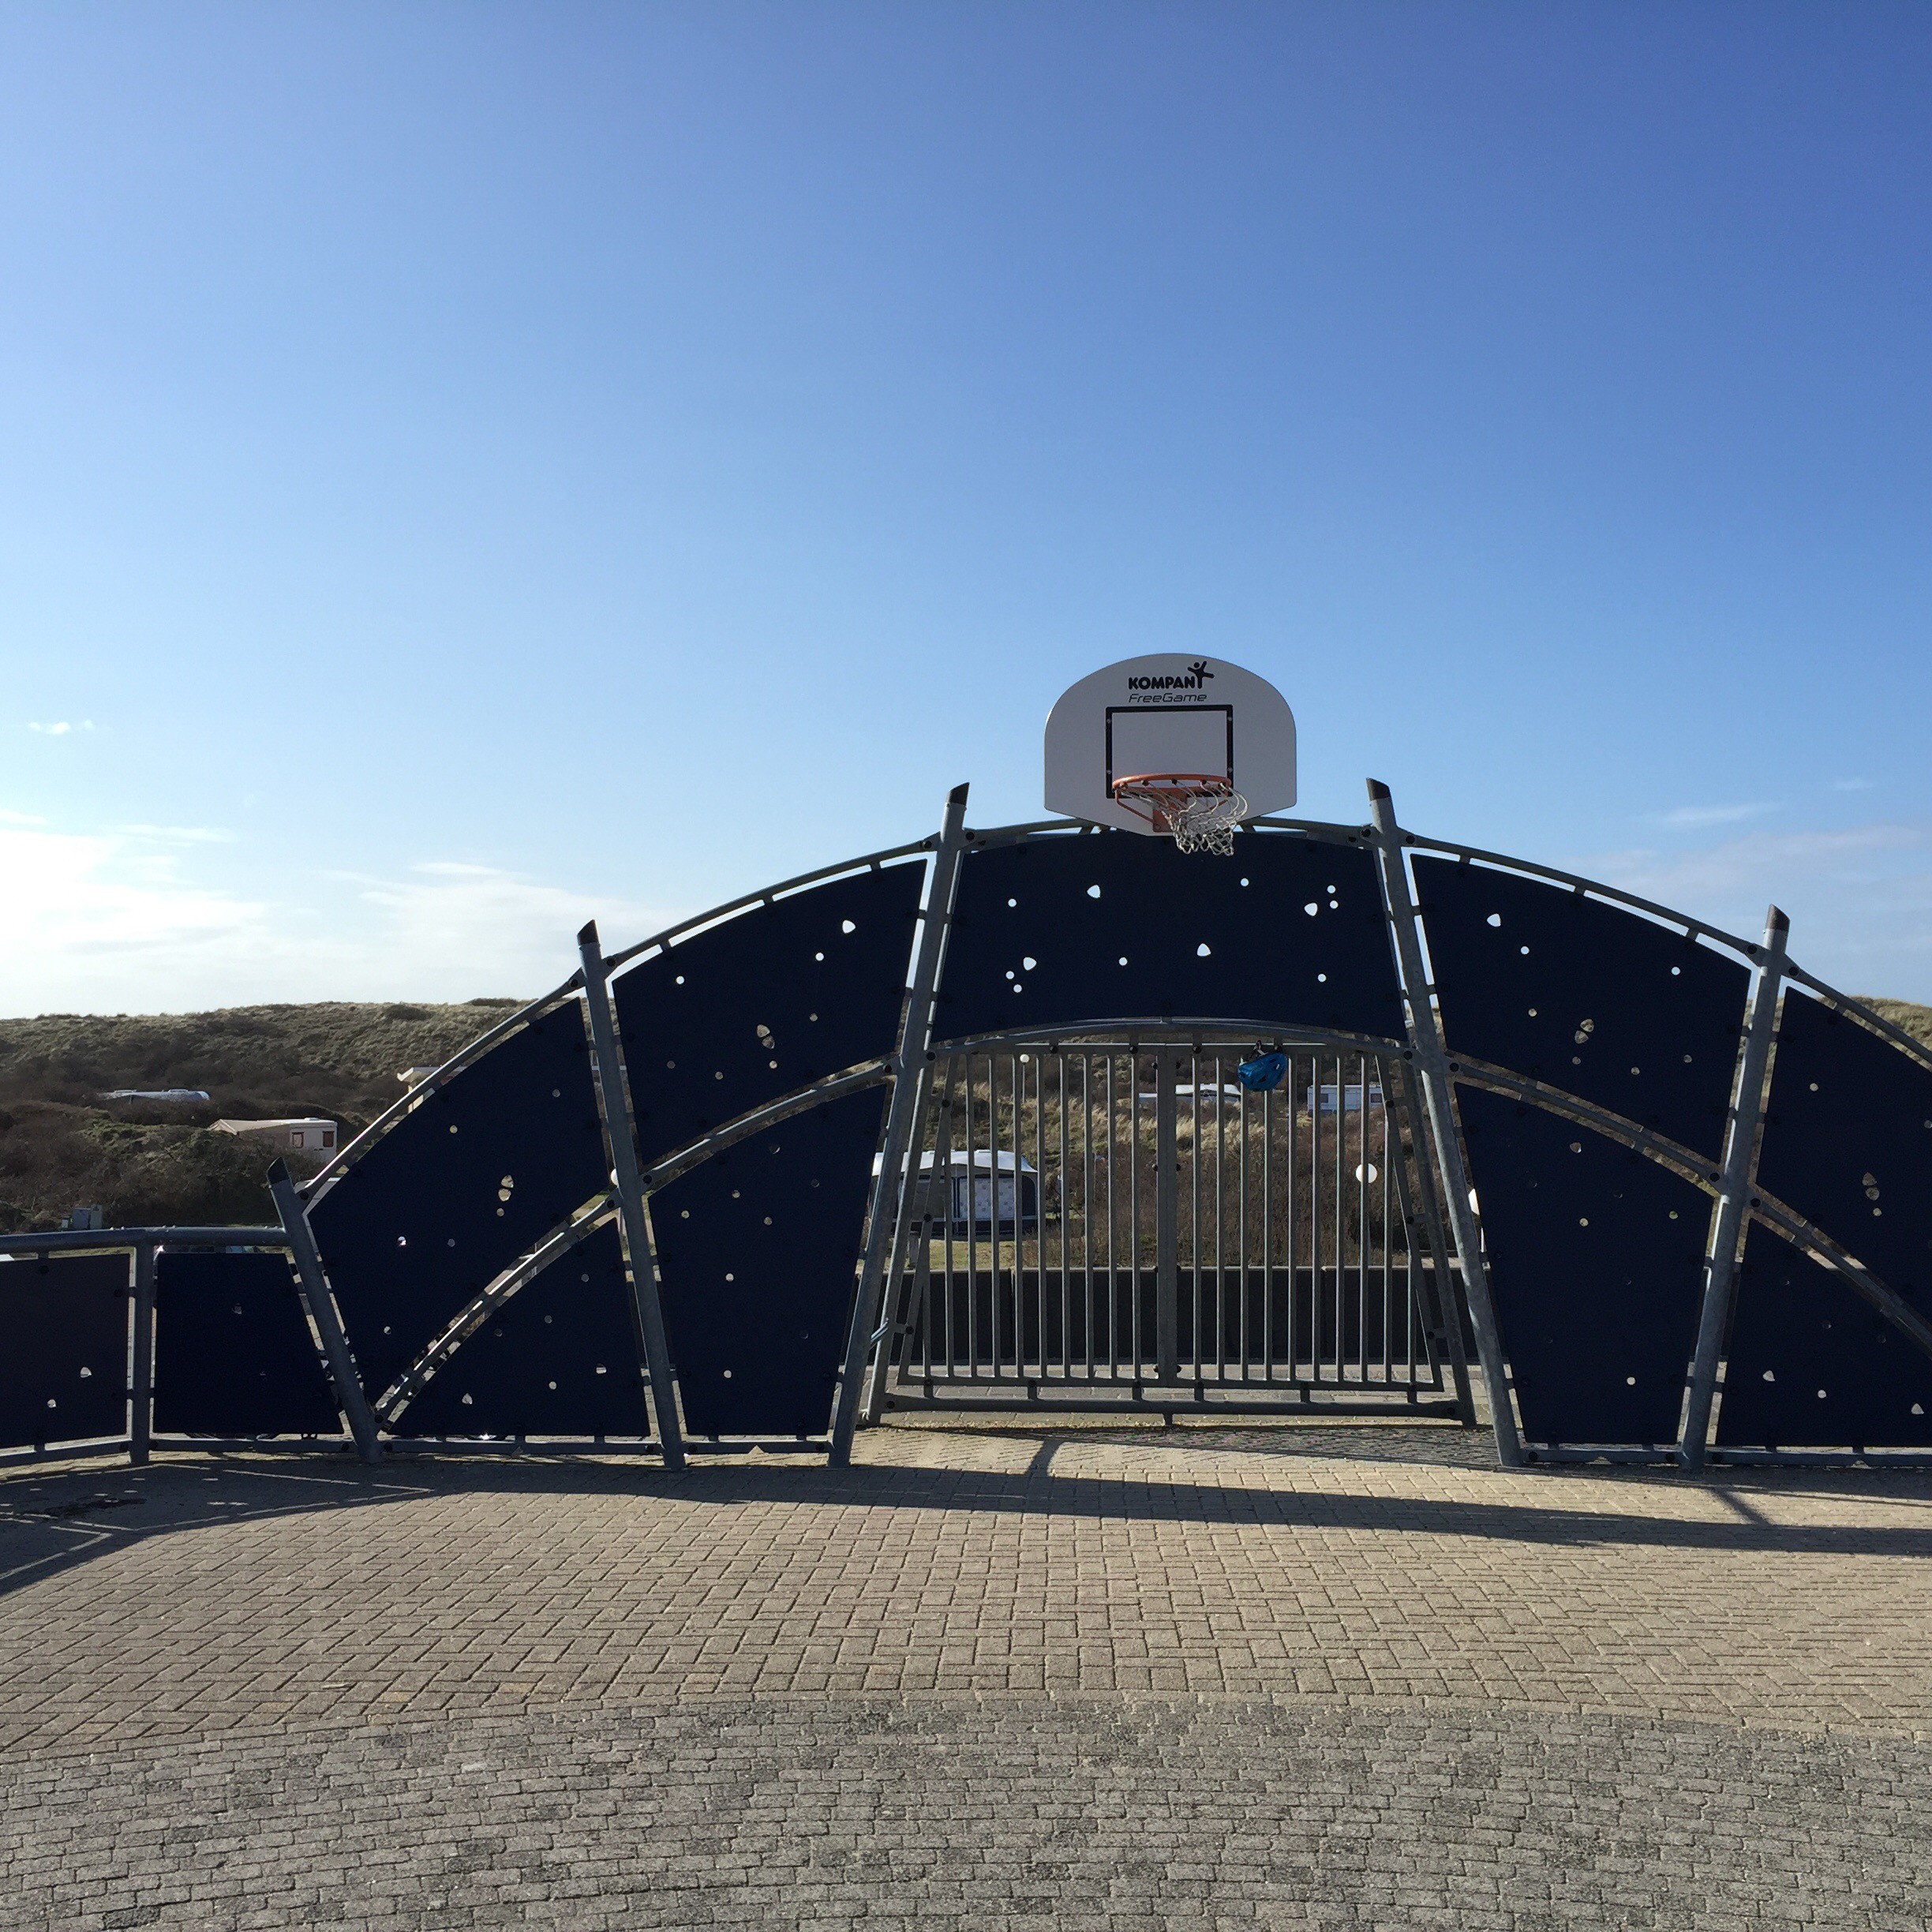 Stadion mit Dünenblick: Fußballplatz am Strand von De Koog!